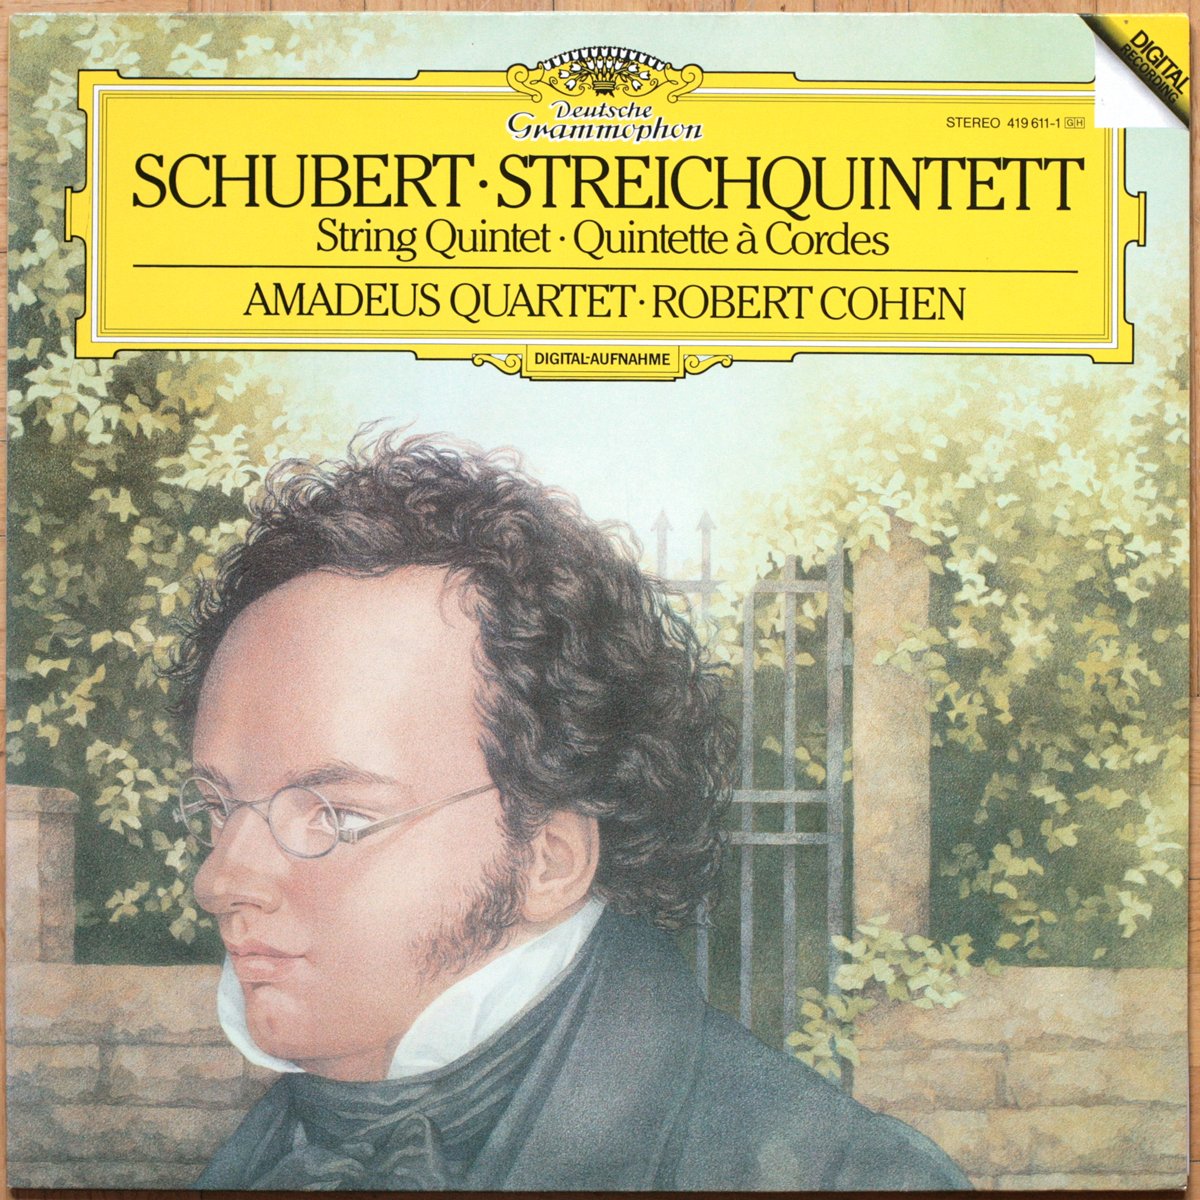 DGG 419 611 Schubert Quintette Cordes Amadeus Cohen DGG Digital Aufnahme